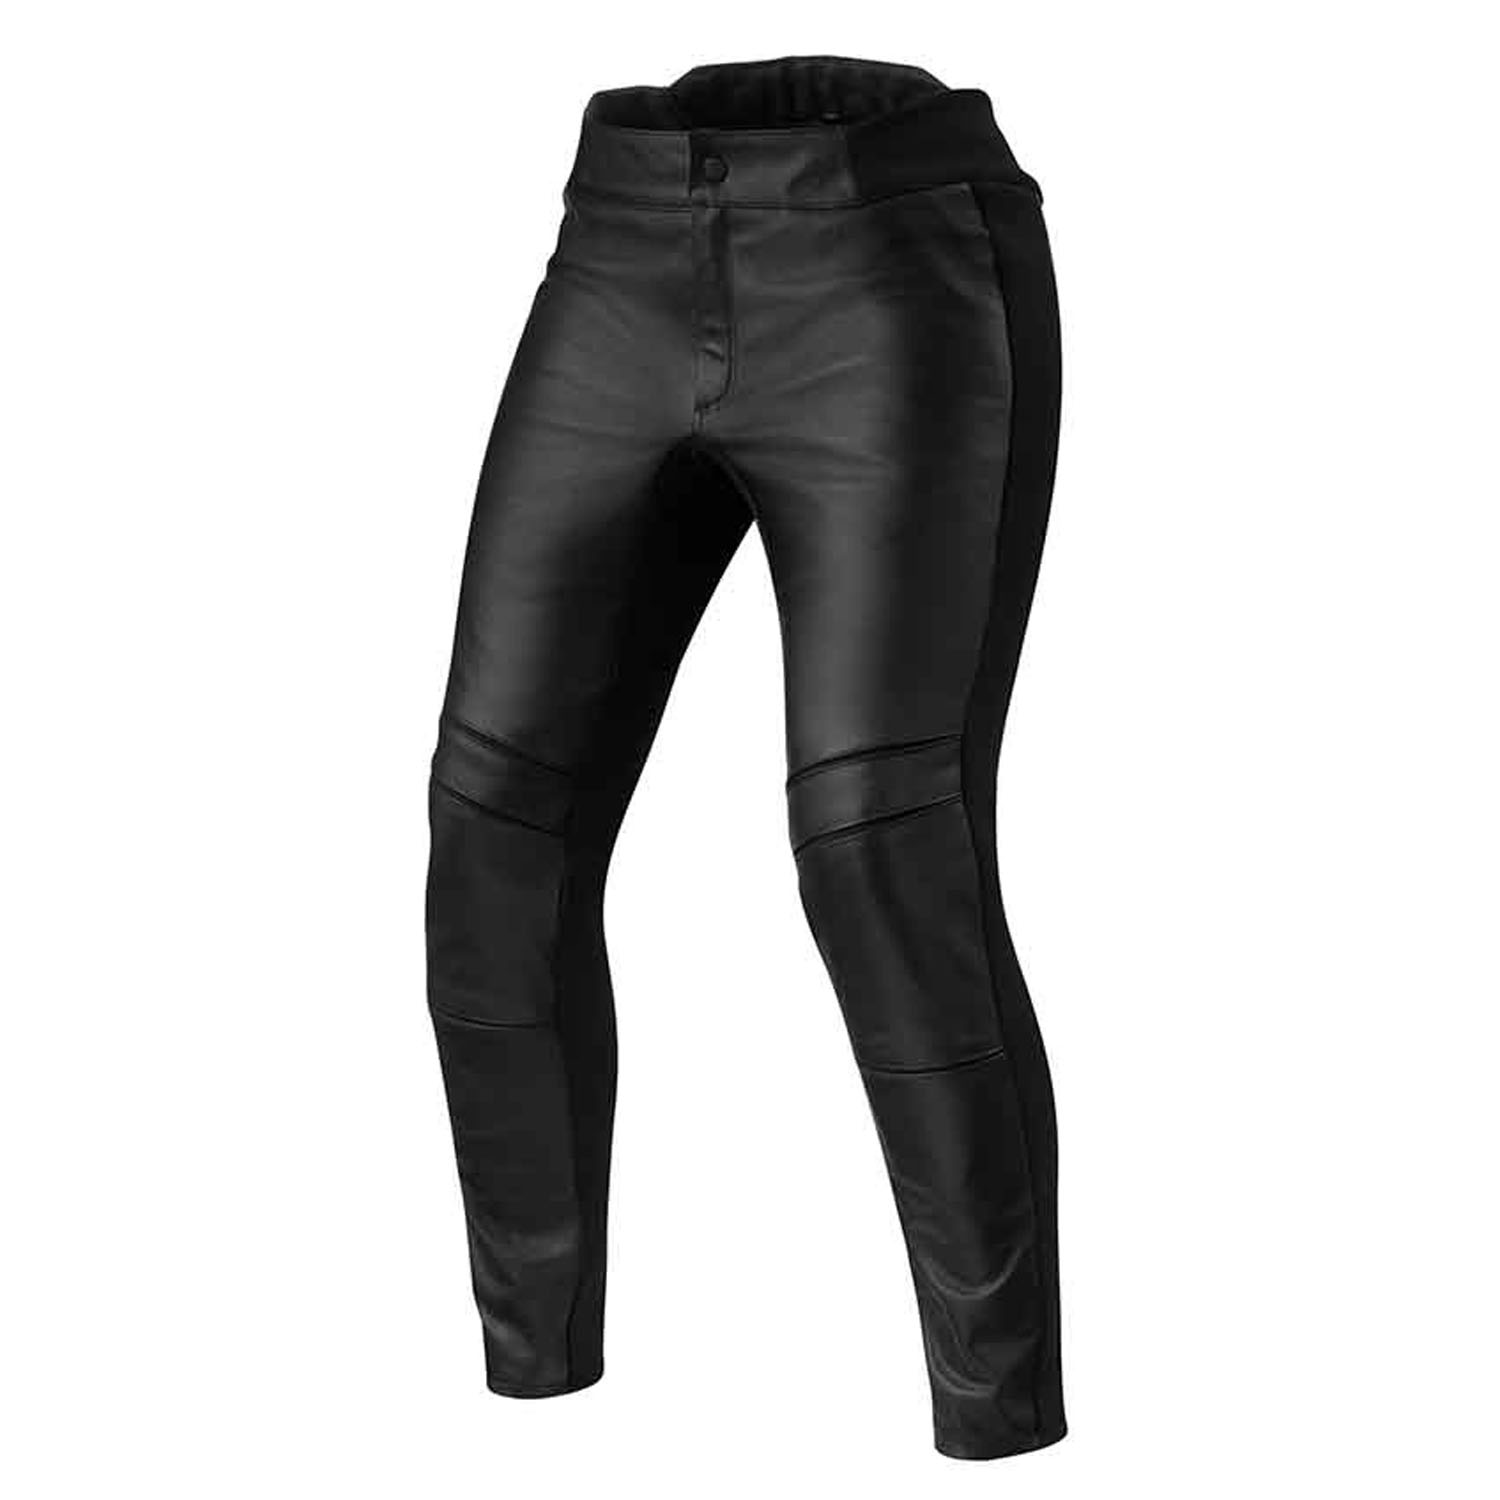 Image of REV'IT! Maci Ladies Black Standard Motorcycle Pants Größe 40